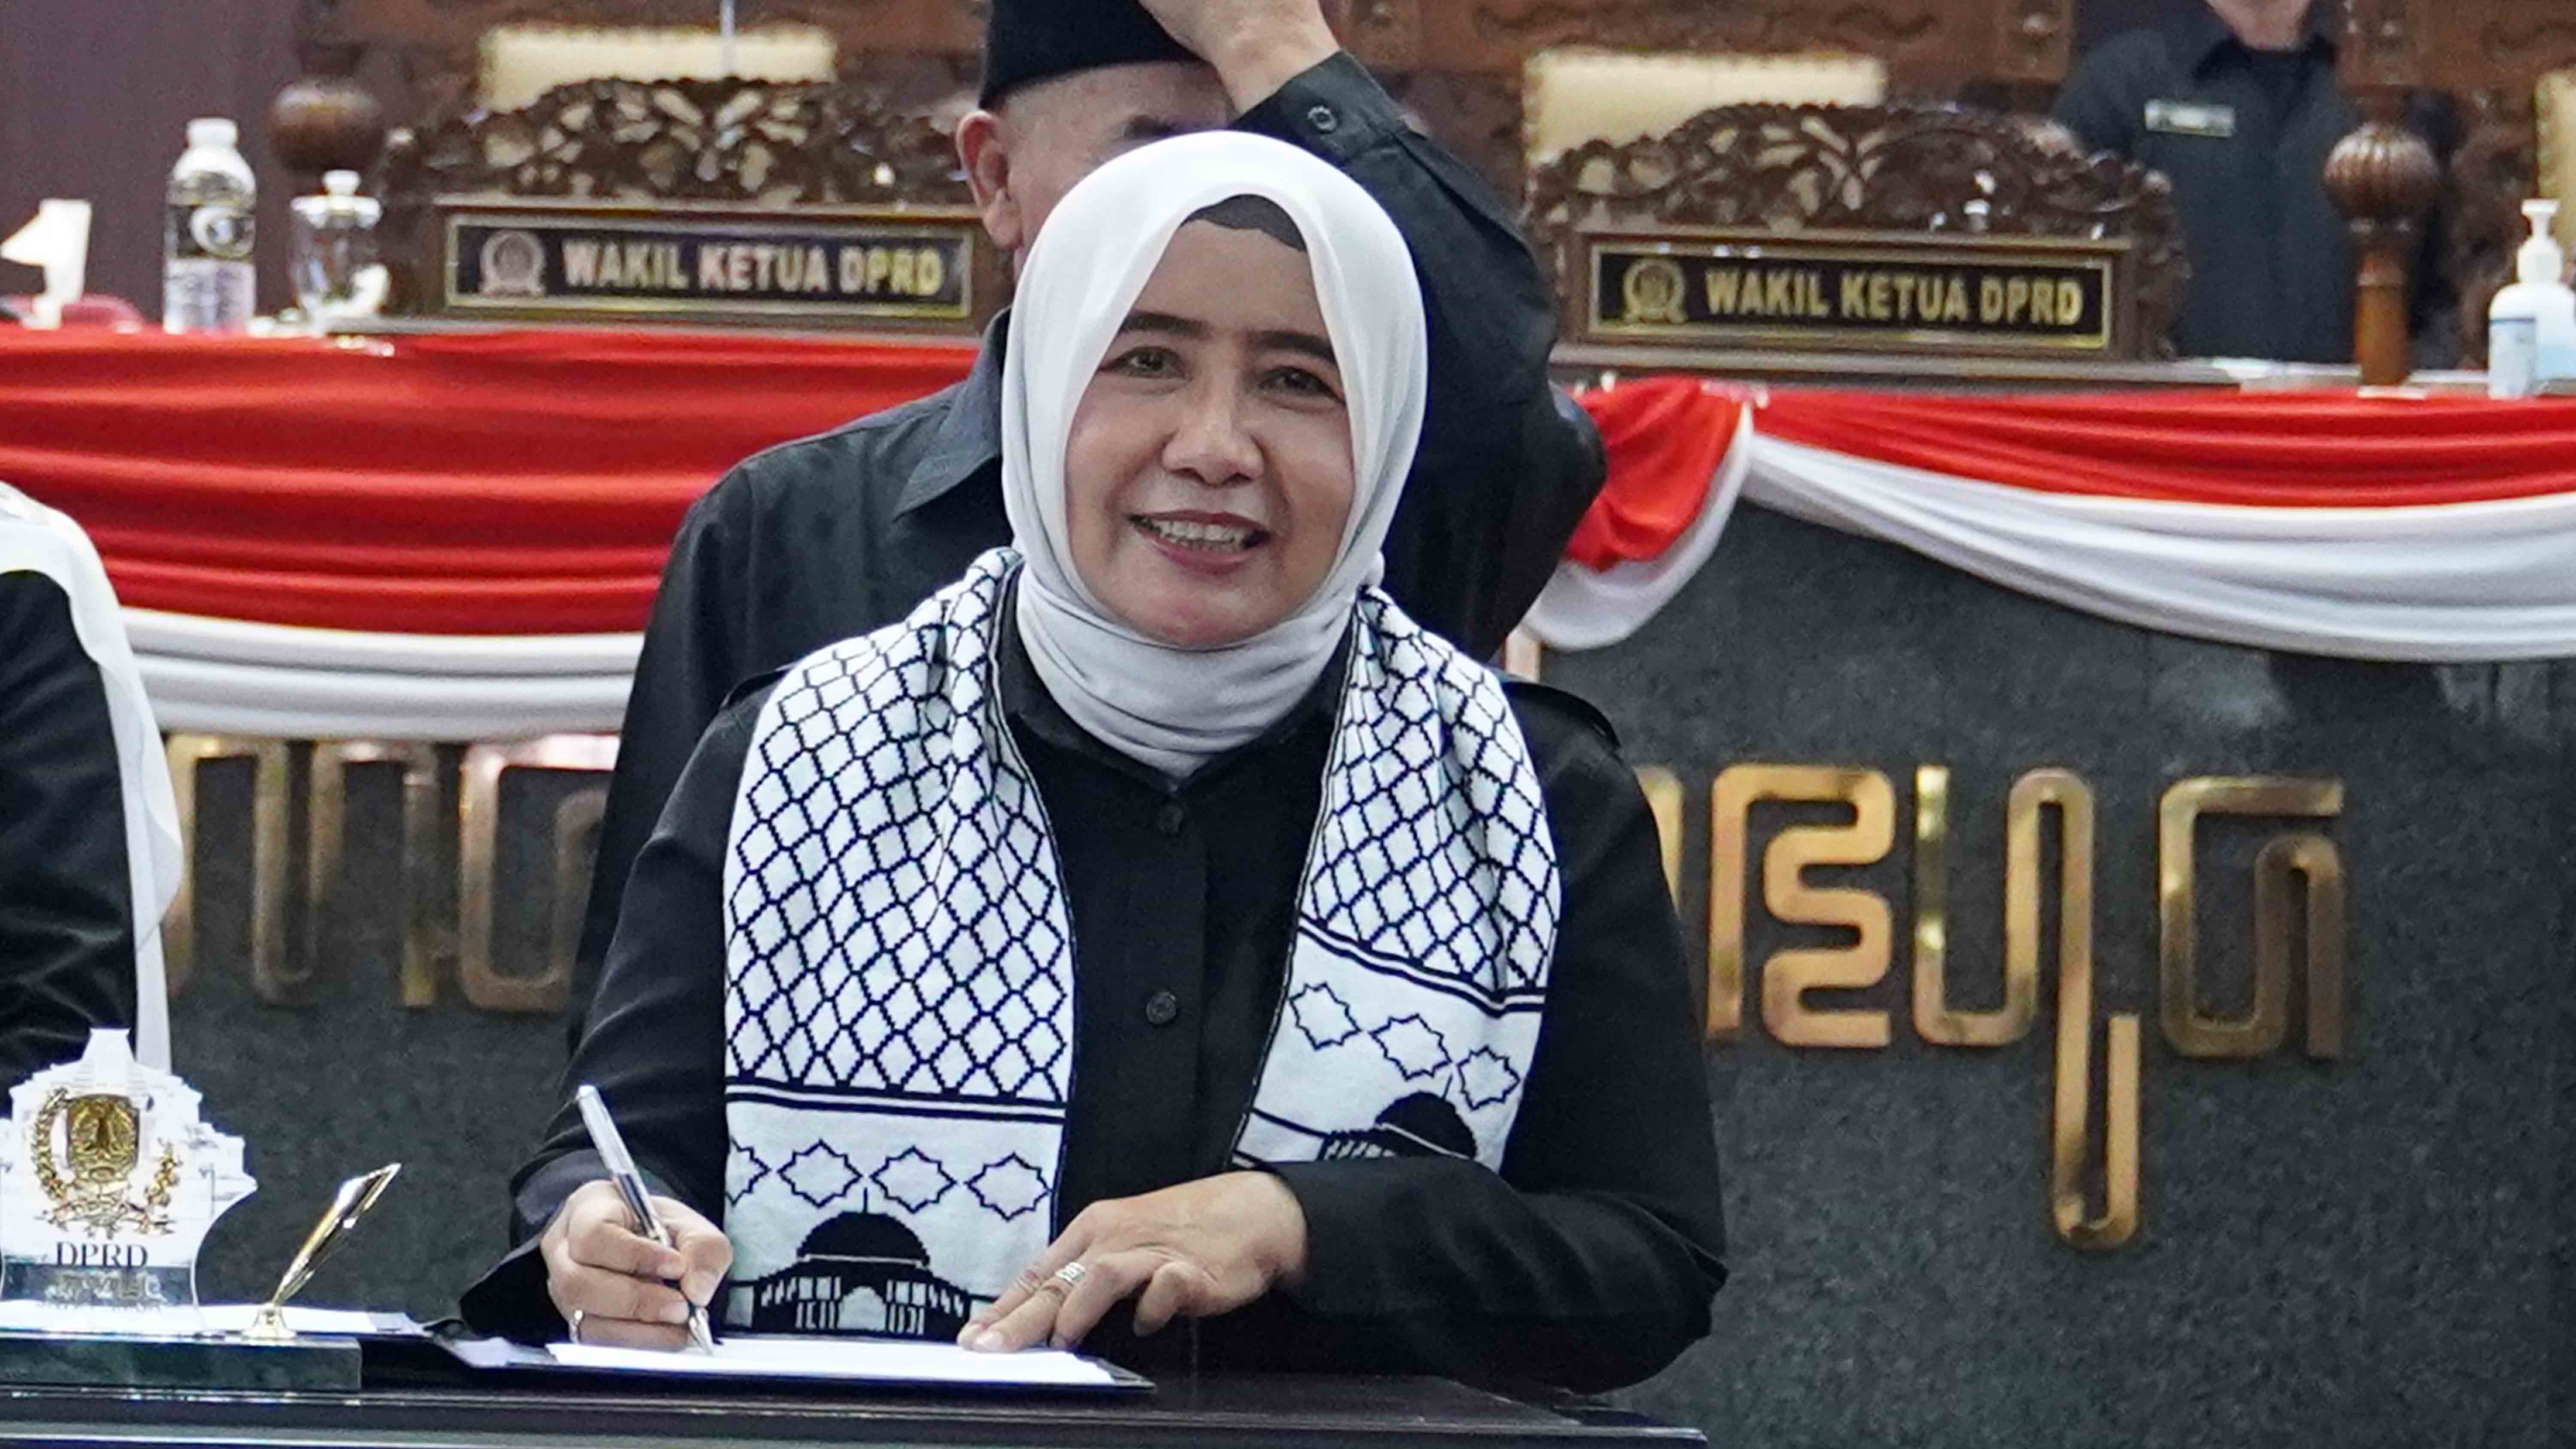 Wakil Ketua DPRD Jawa Timur, Anik Maslachah